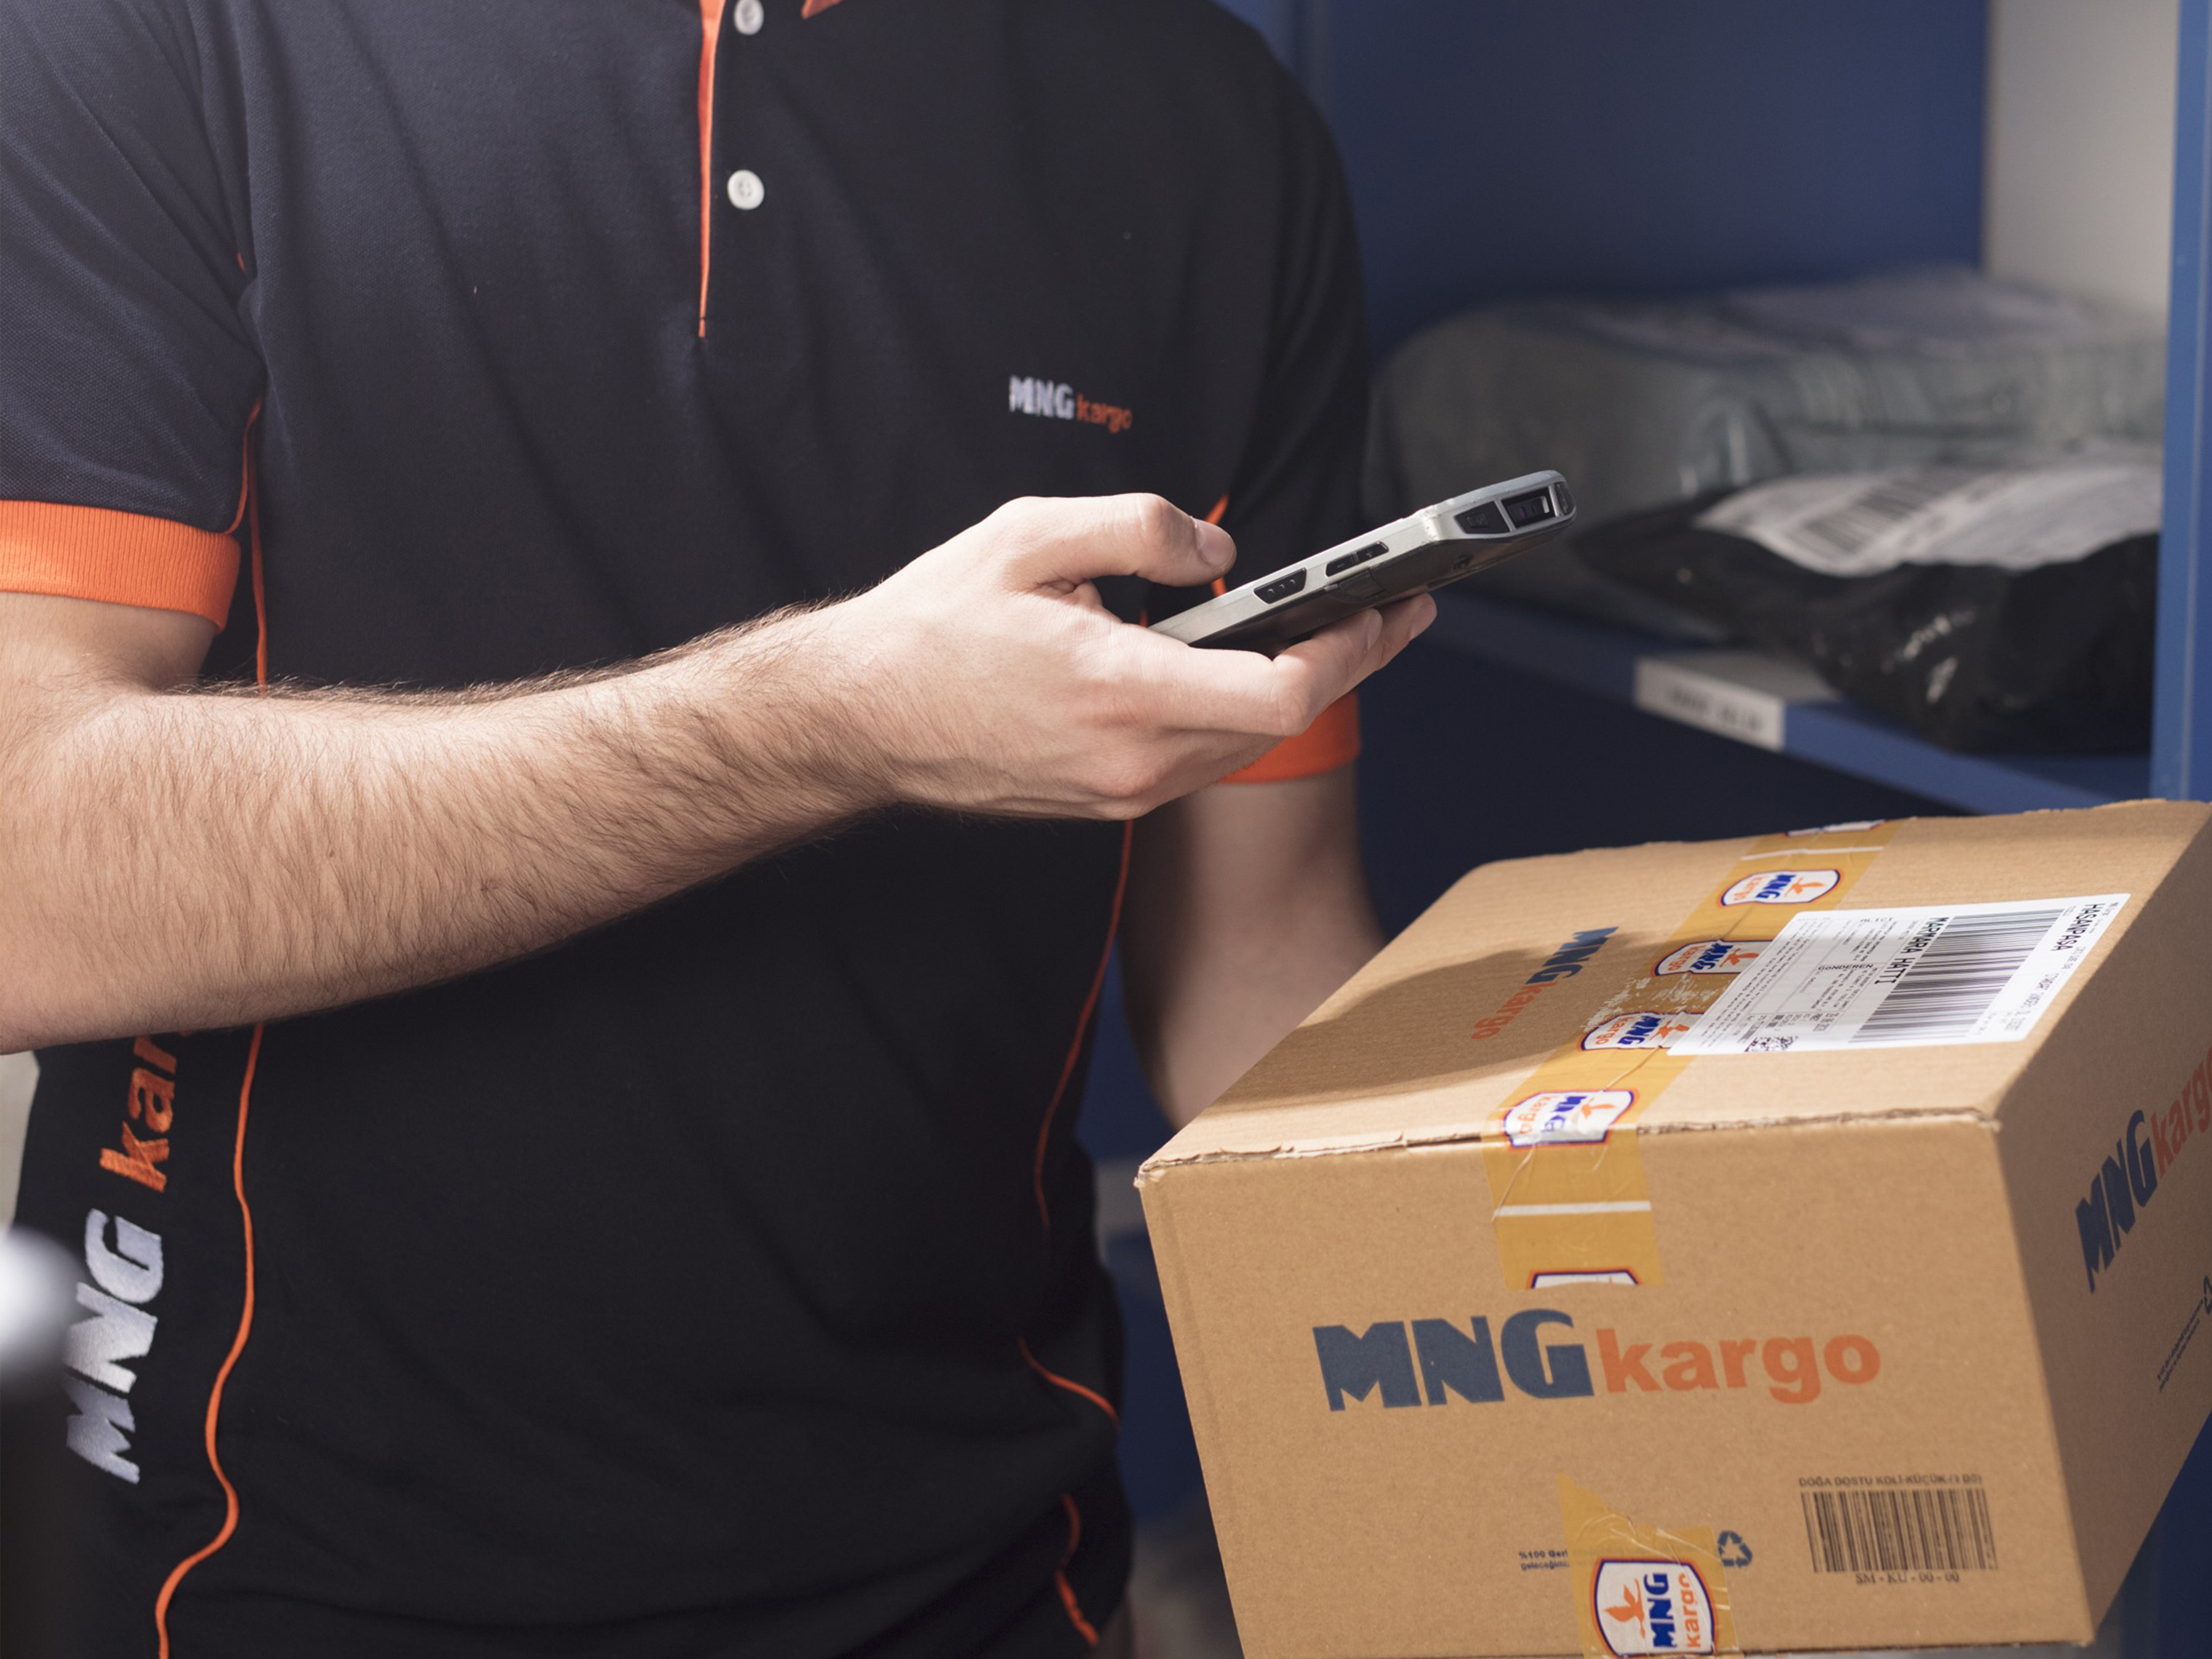 MNG Kargo employee scanning a box